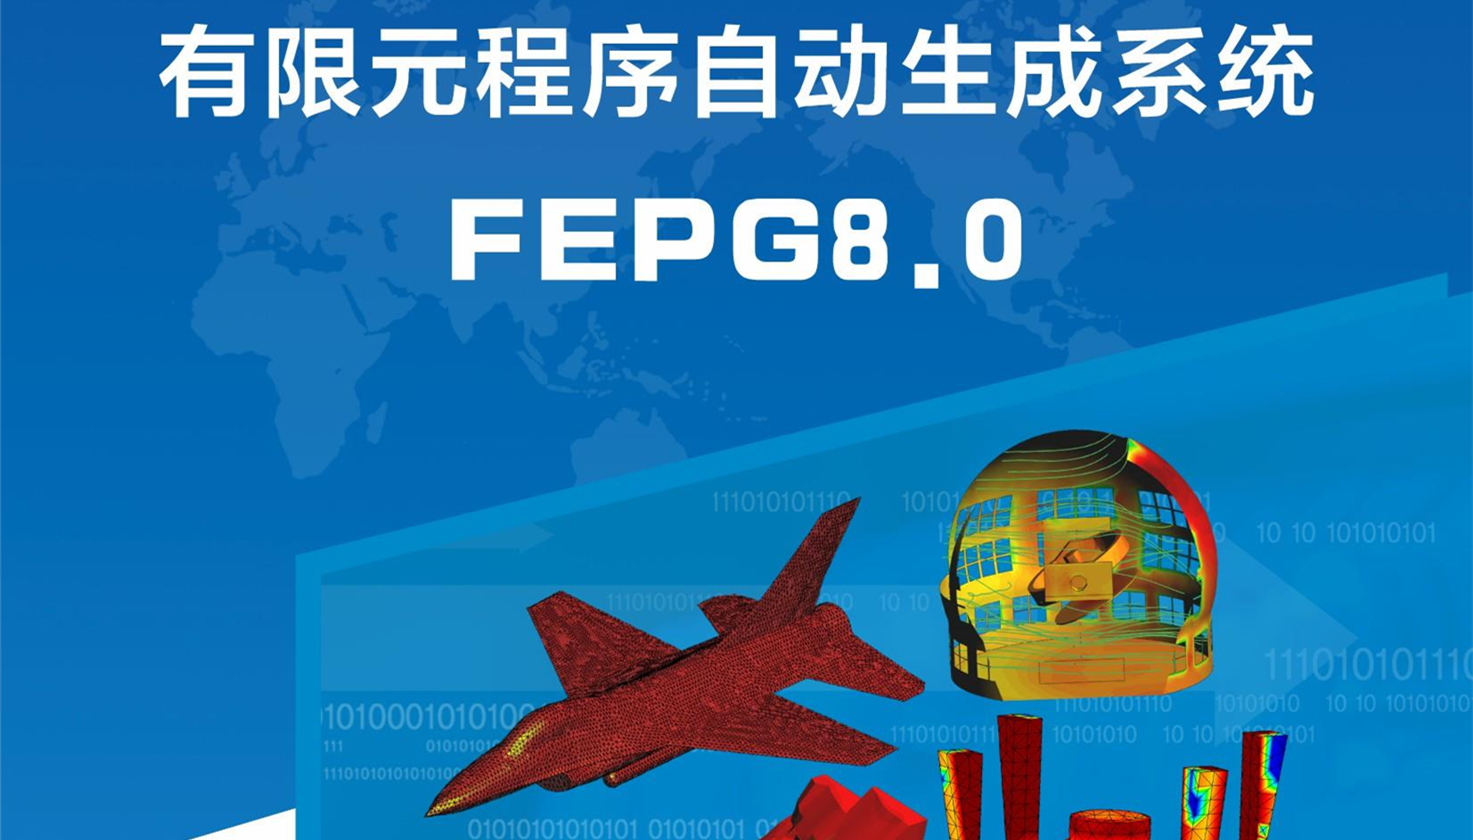 有限元程序自动生成系统FEPG